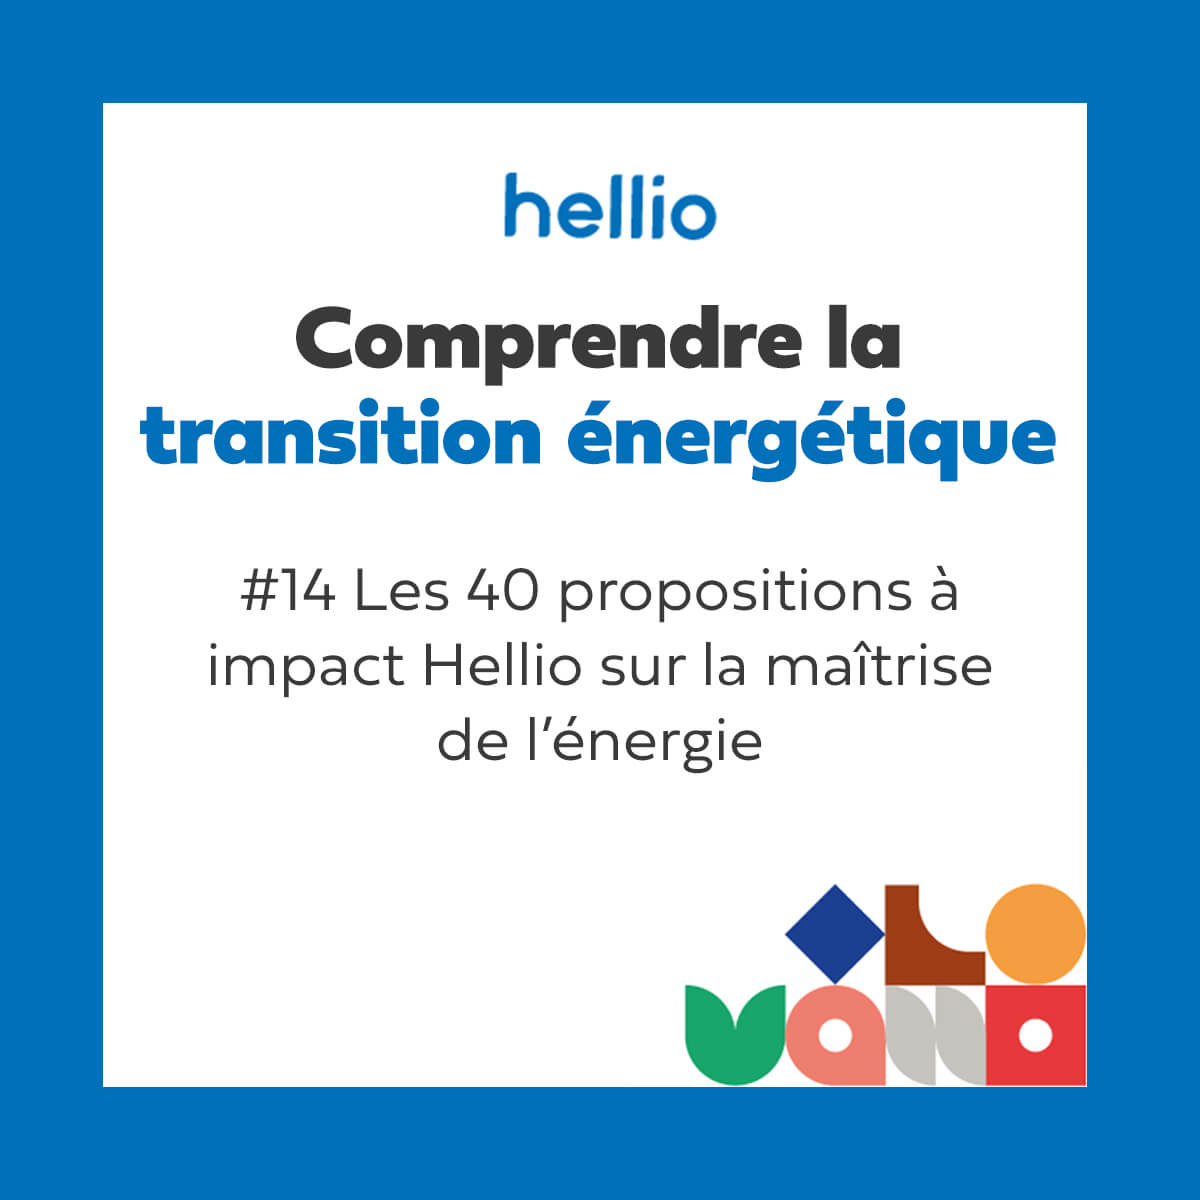 Les 40 propositions à impact Hellio sur la maîtrise de l'énergie